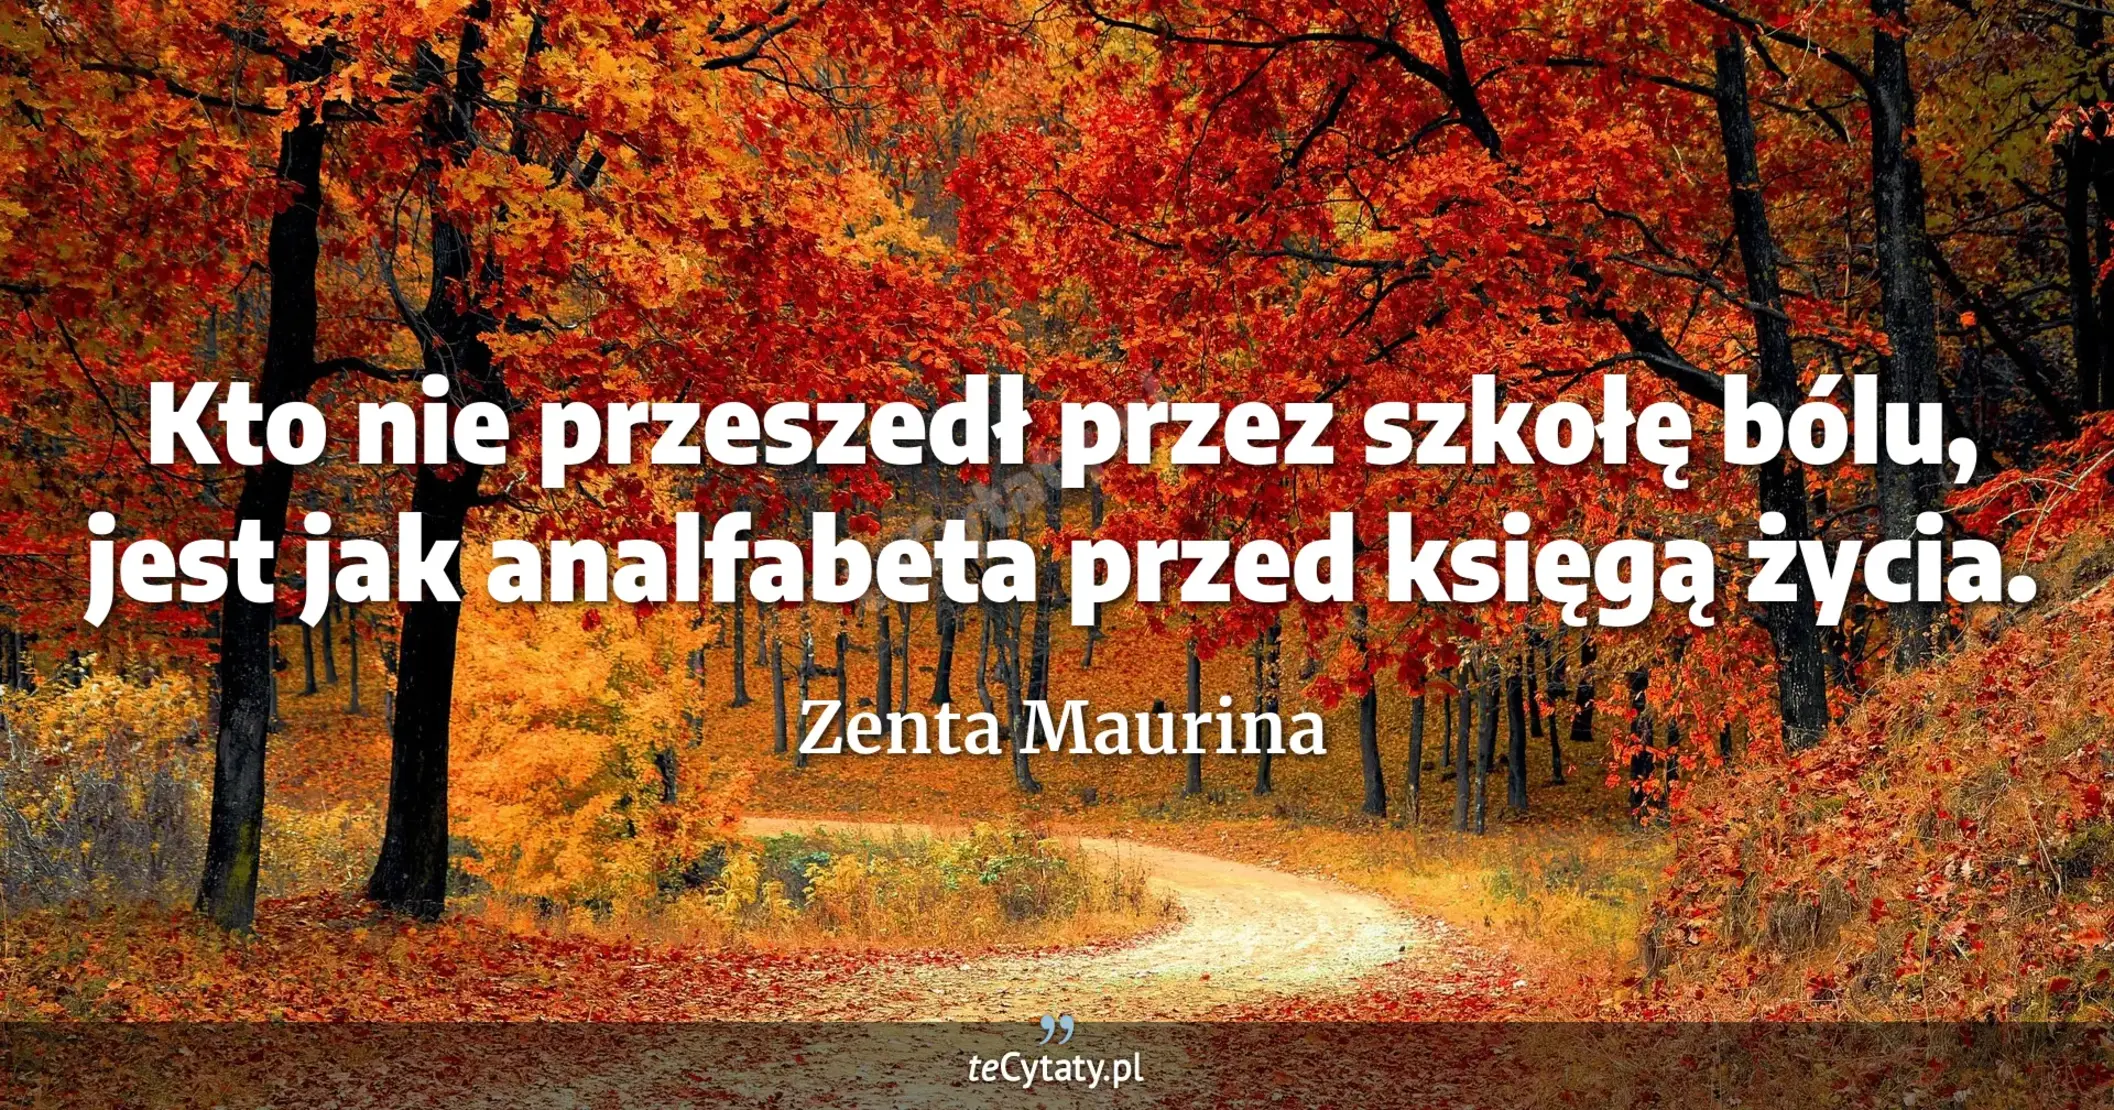 Kto nie przeszedł przez szkołę bólu, jest jak analfabeta przed księgą życia. - Zenta Maurina